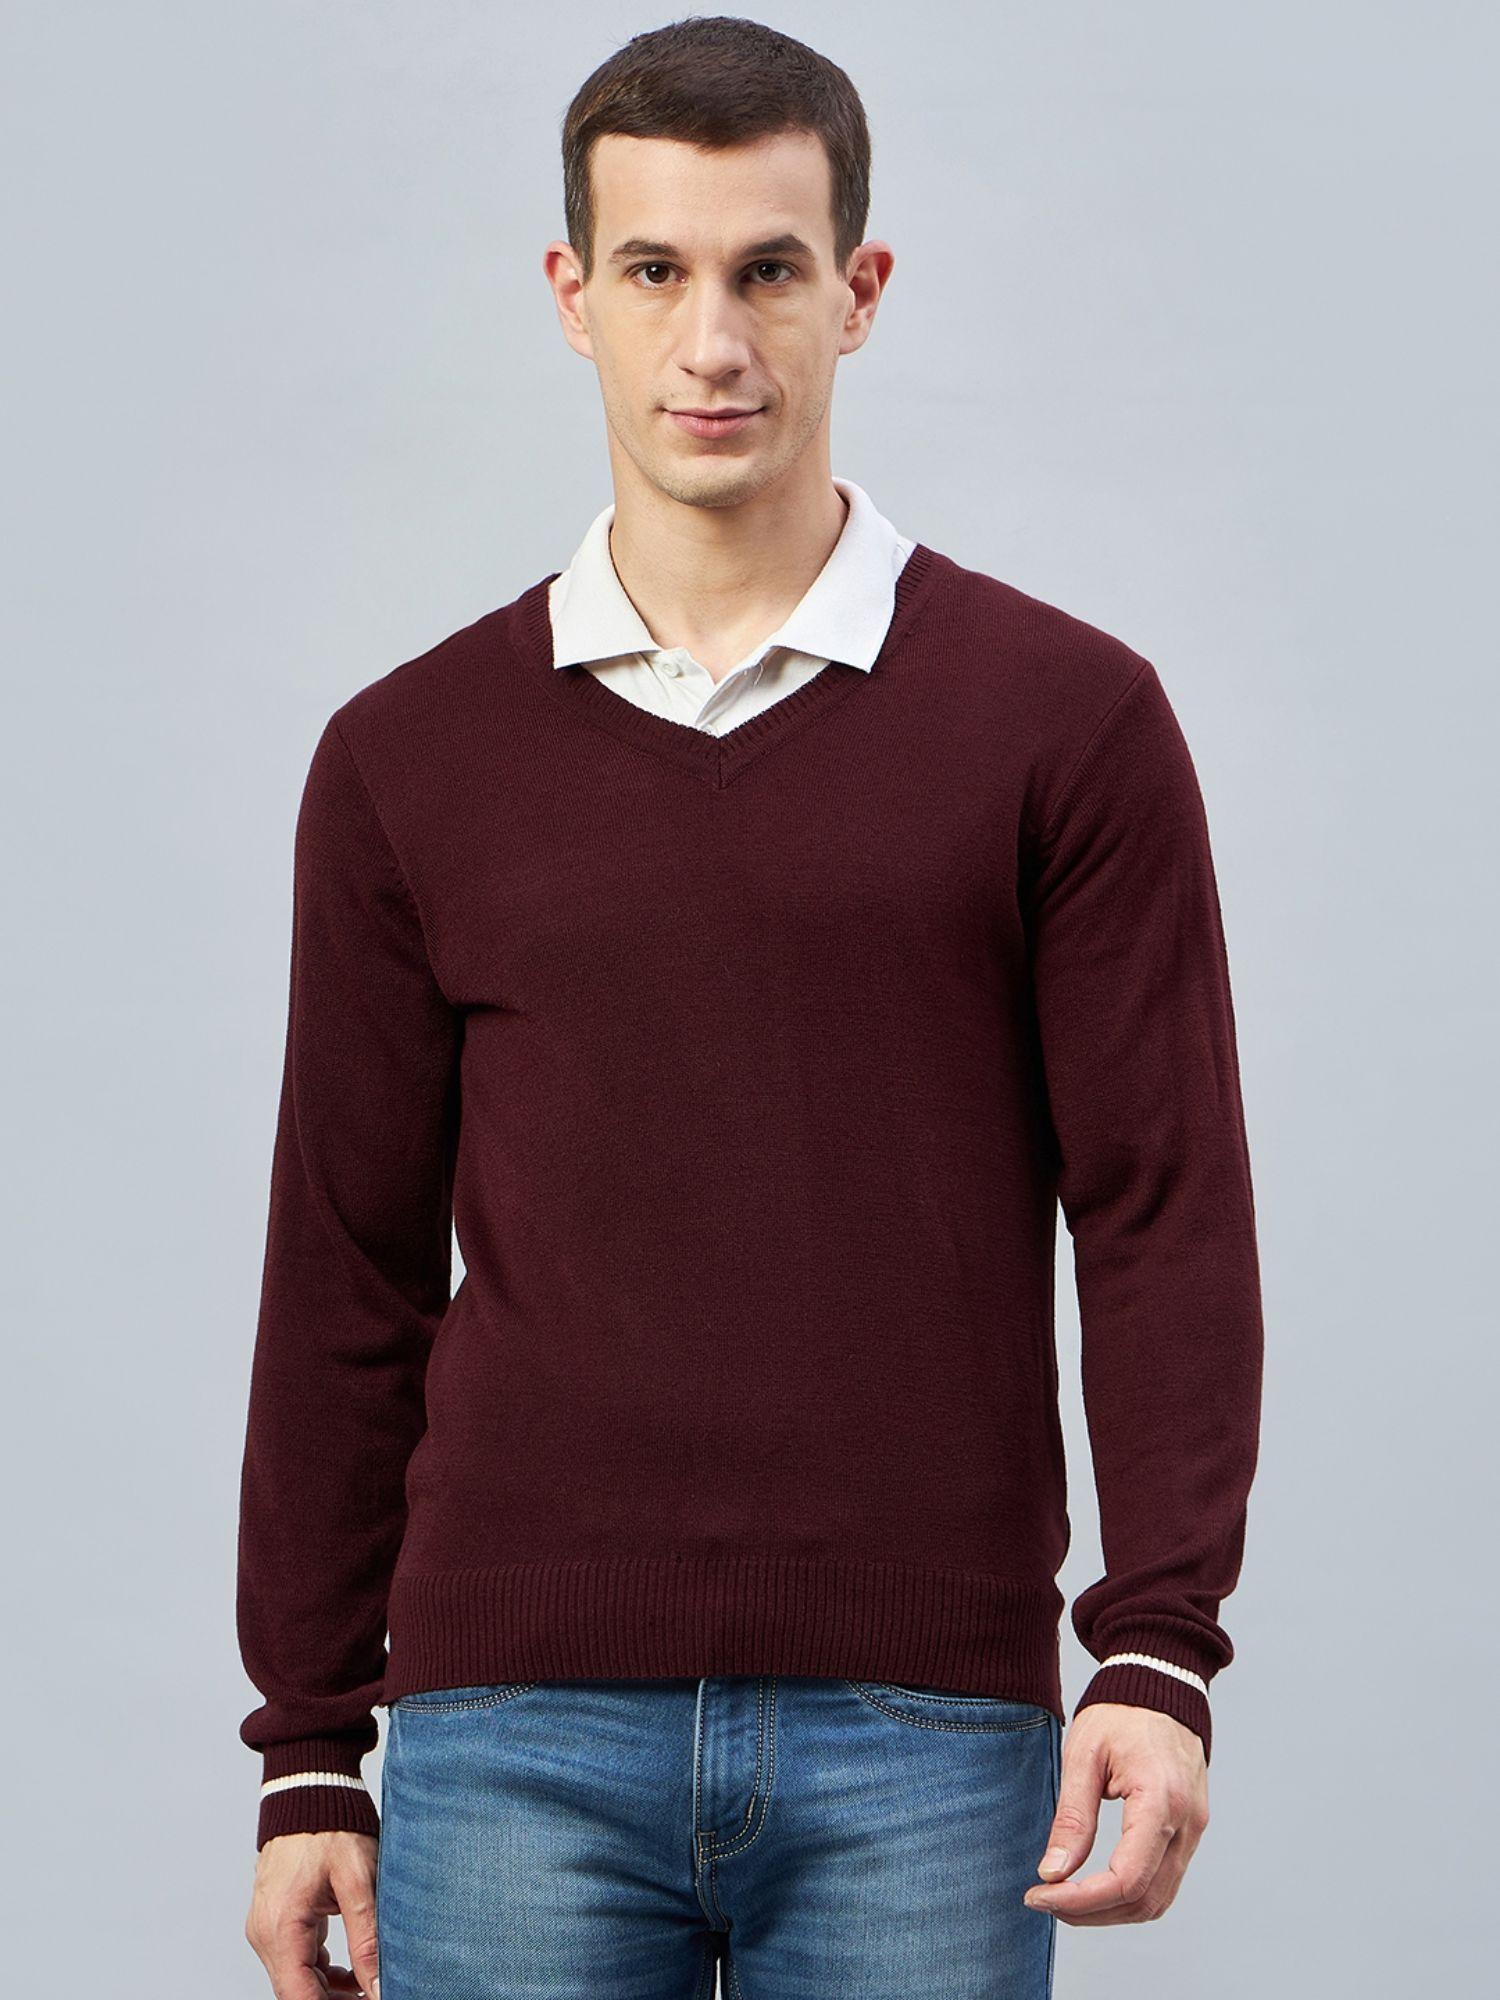 maroon v neck sweater